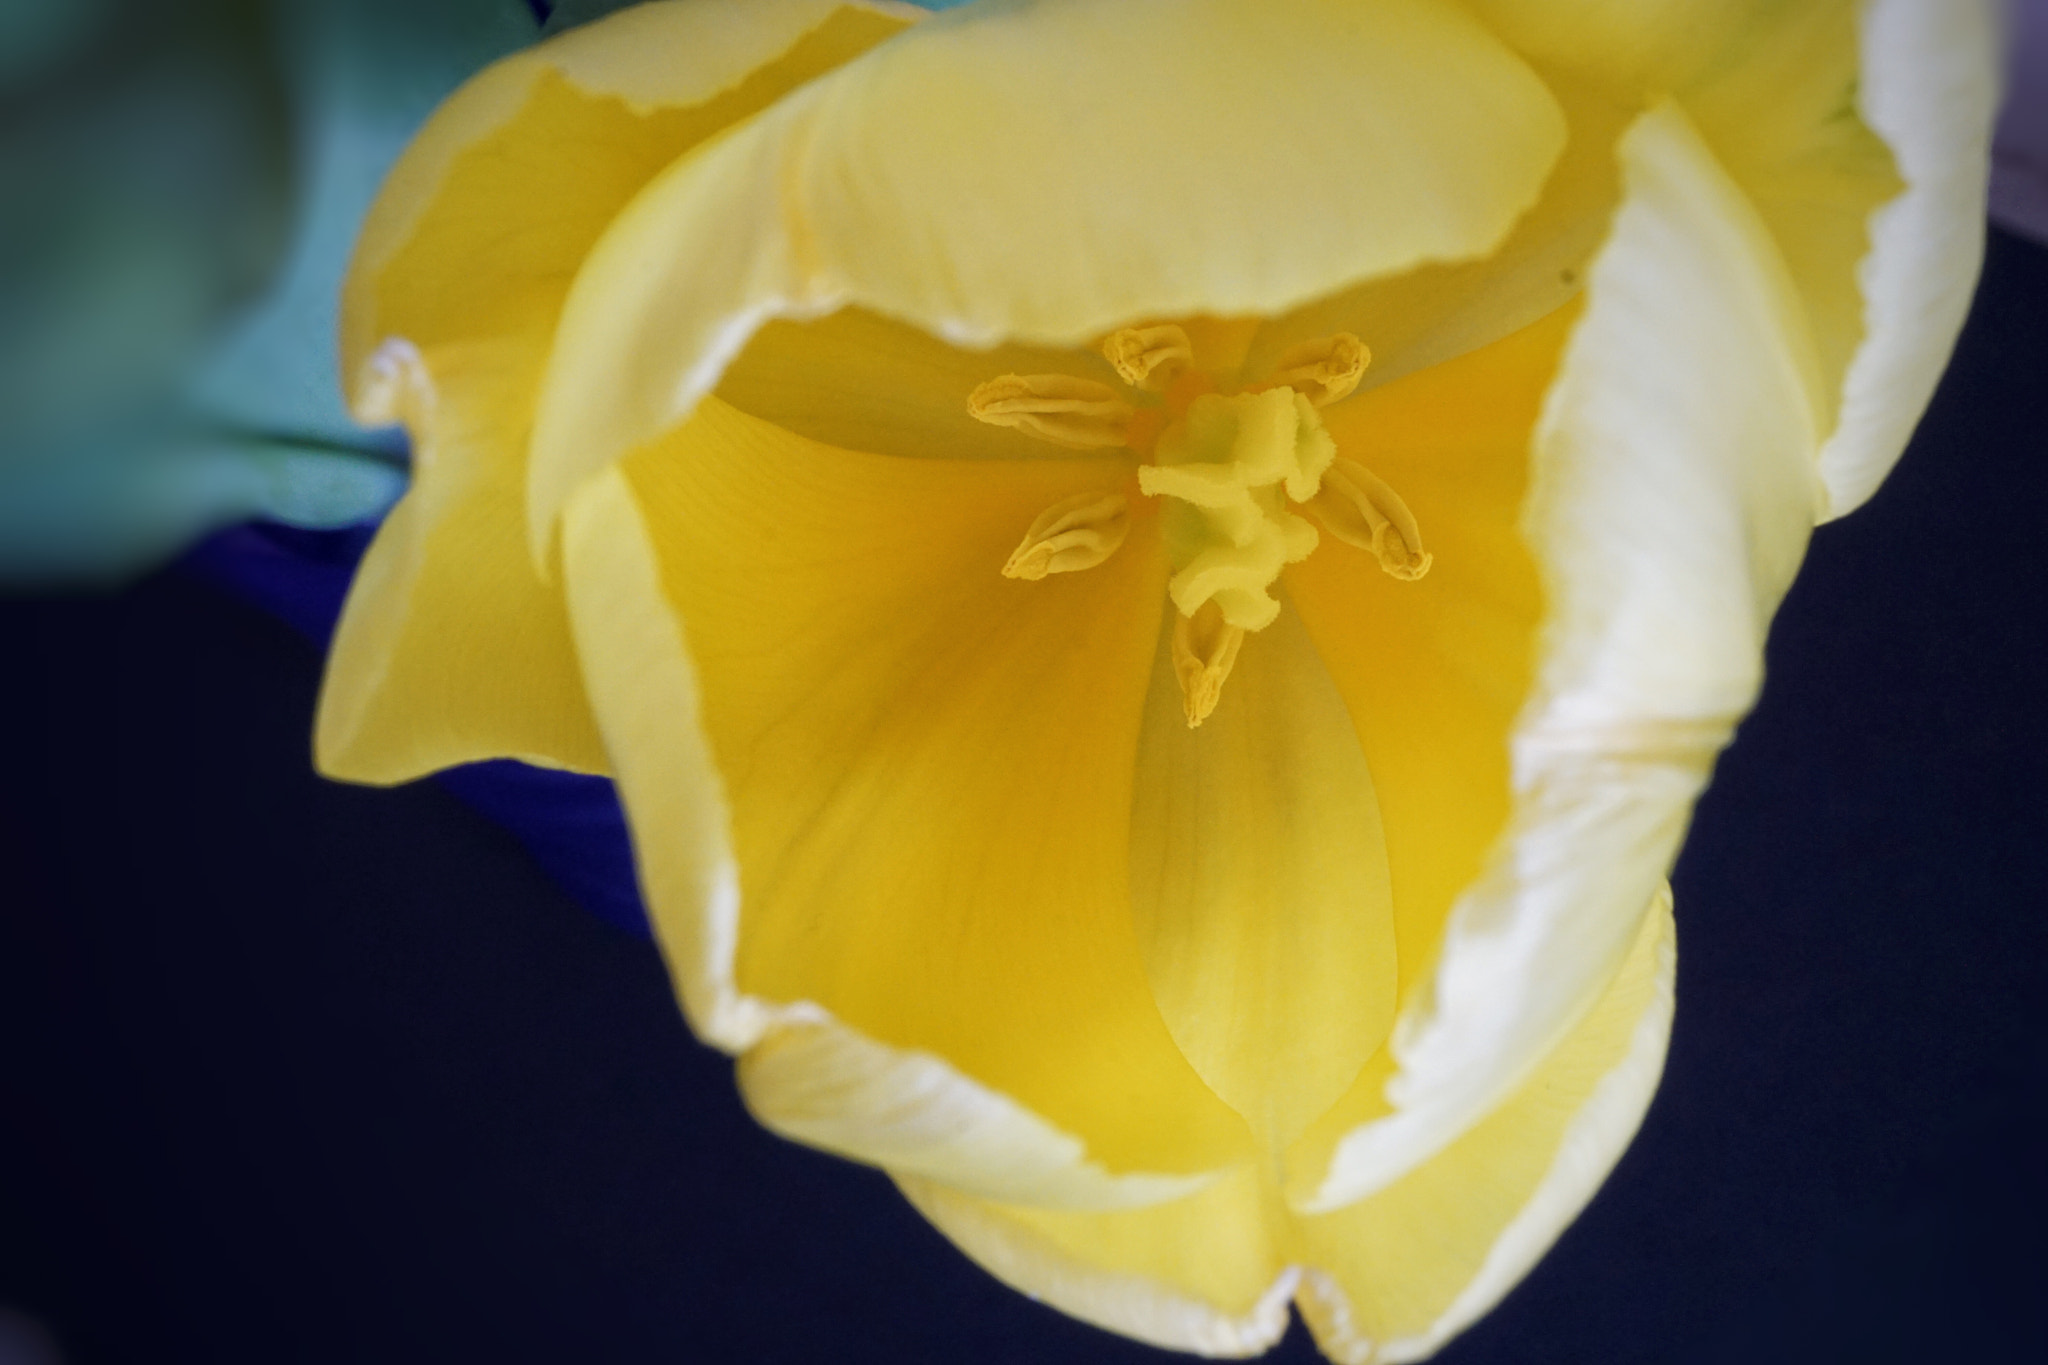 Sony a6000 sample photo. Tulip macro photography